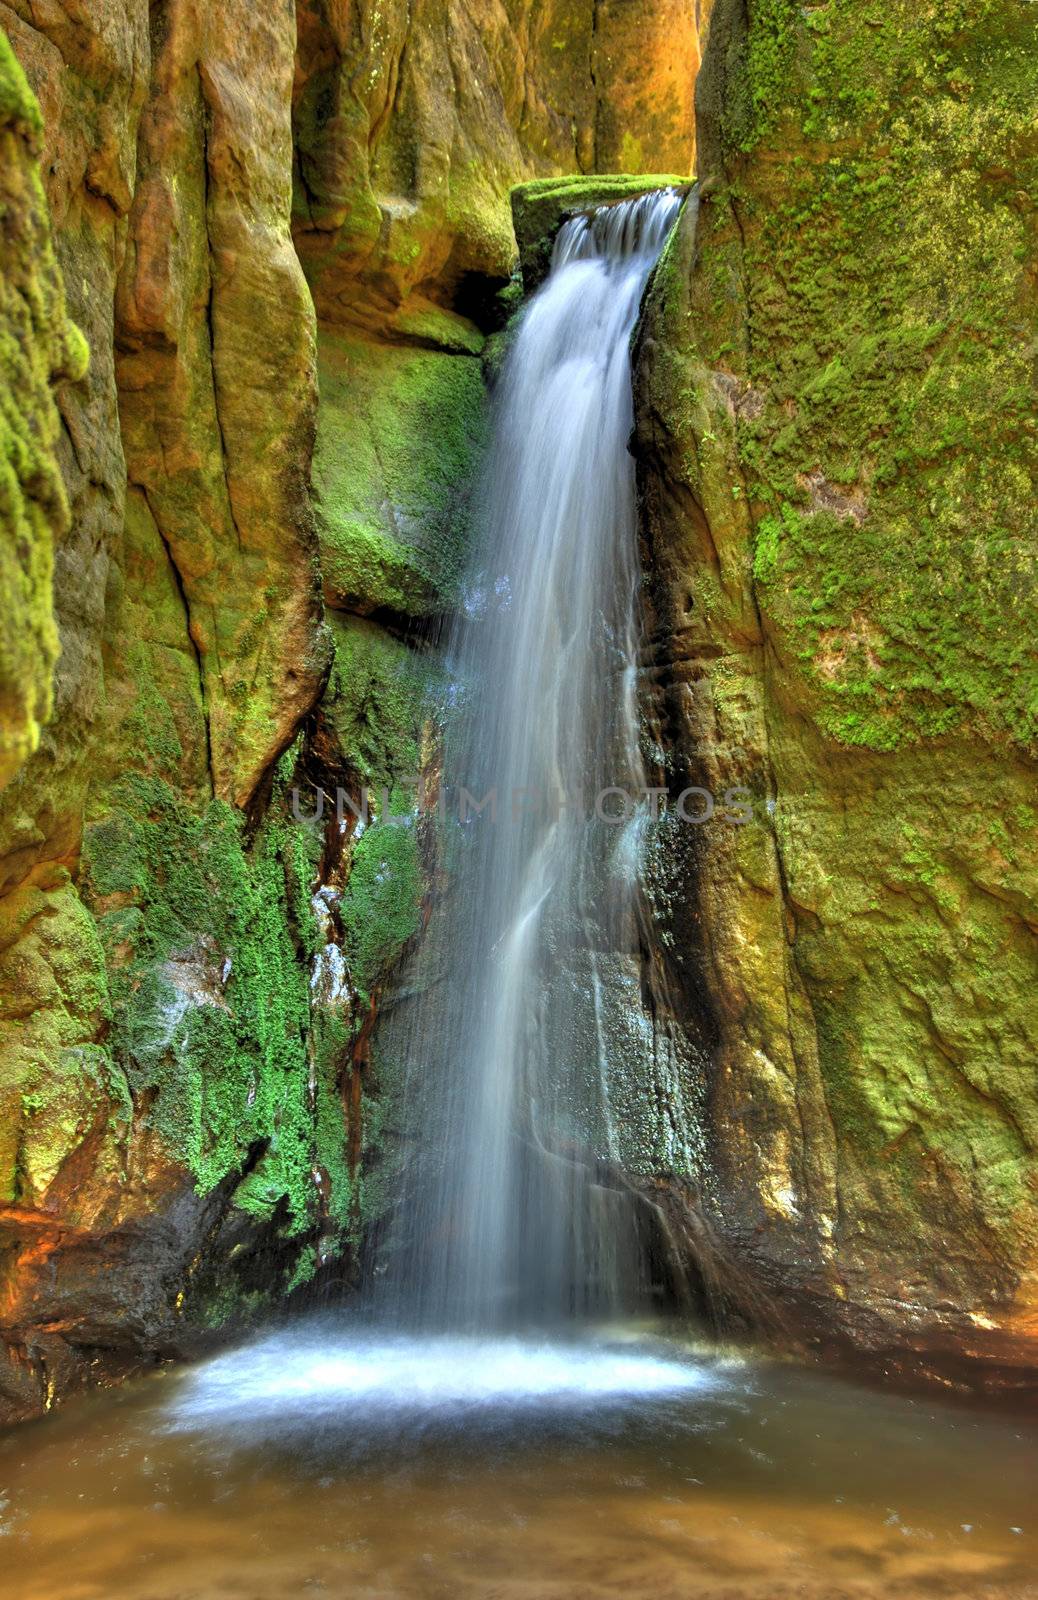 Waterfall in Aderspach sandstone rock city in Czech Republic